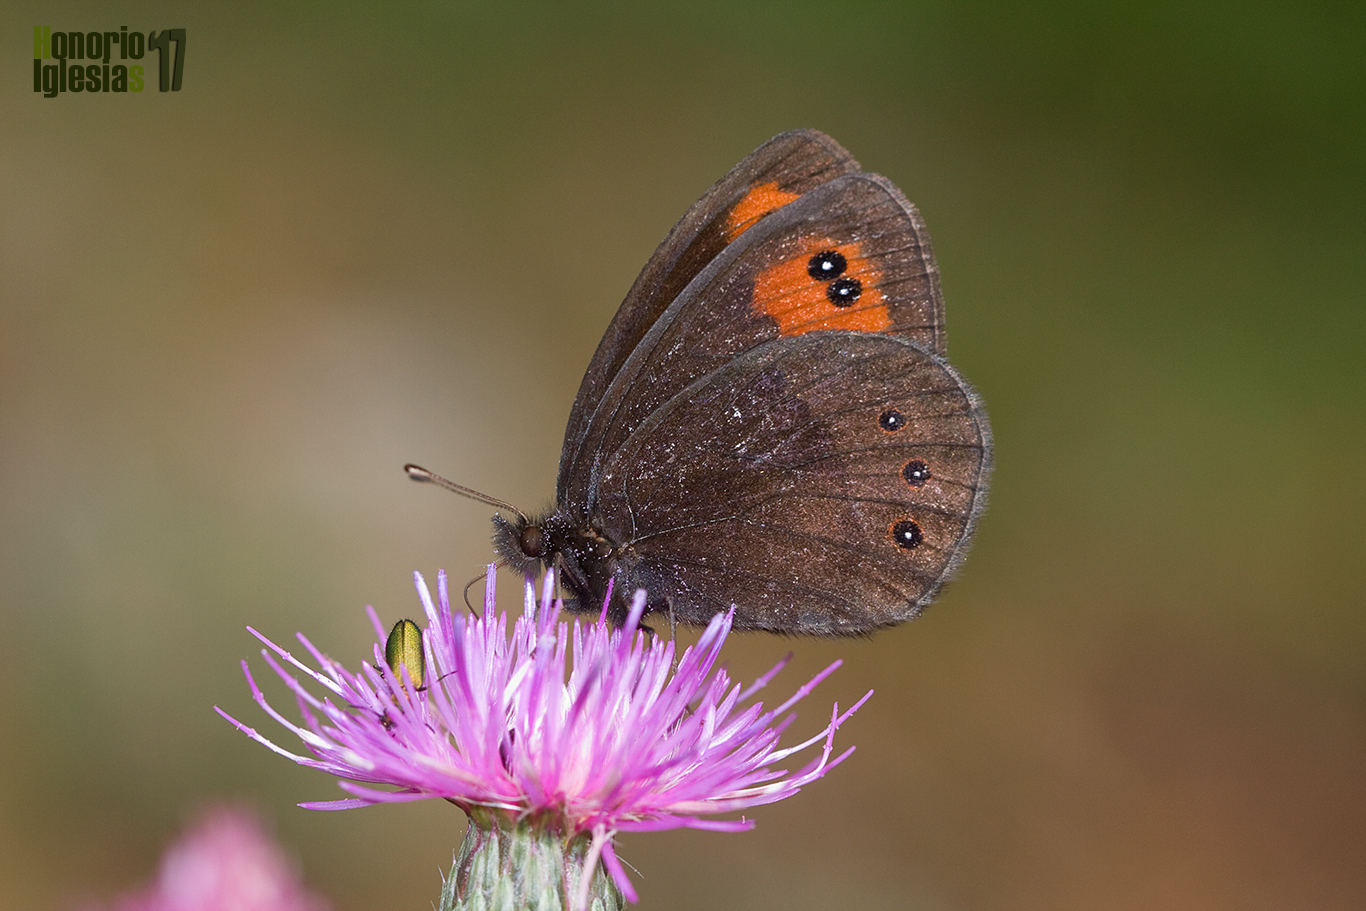 Ejempalr de mariposa erebia común o montañesa de banda larga (Erebia meolans) libando de las flores de una compuesta.